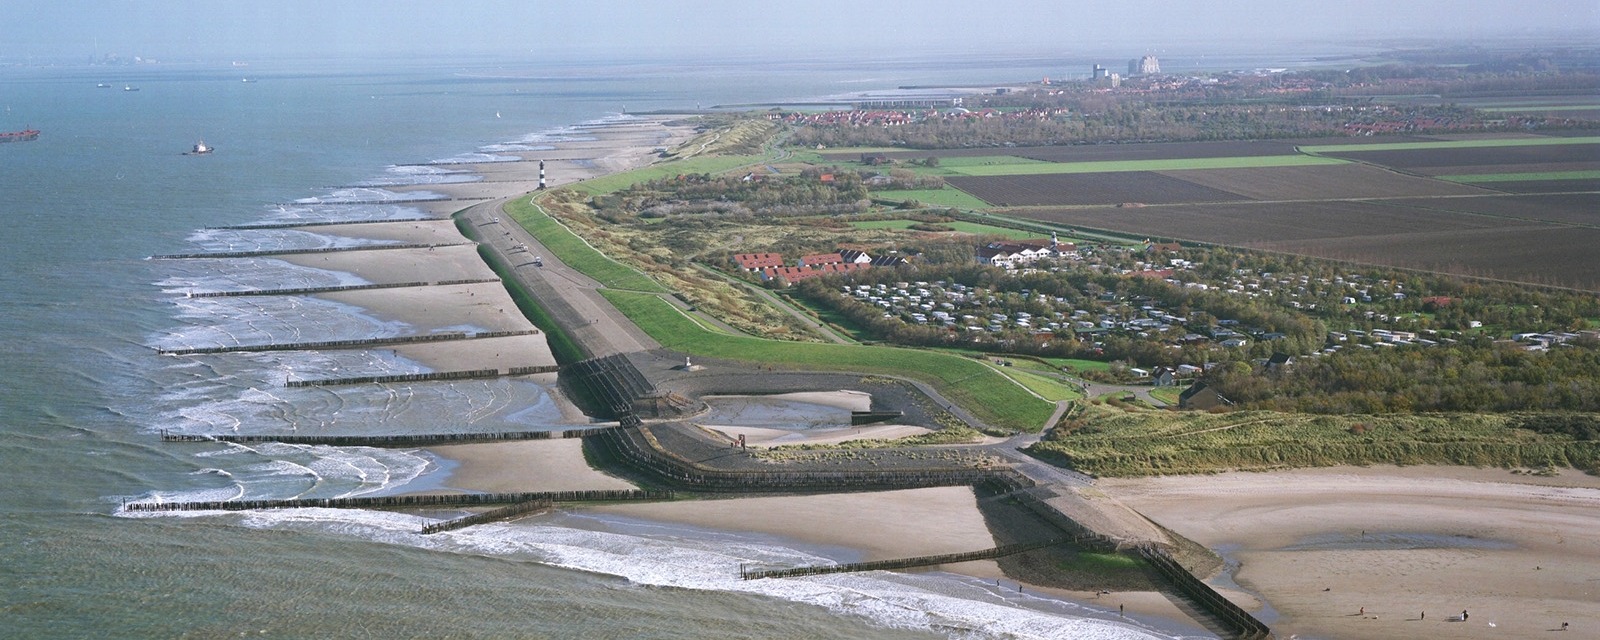 Zeedijk Waterdunen luchtfoto situatie 2008 vanuit het oosten.